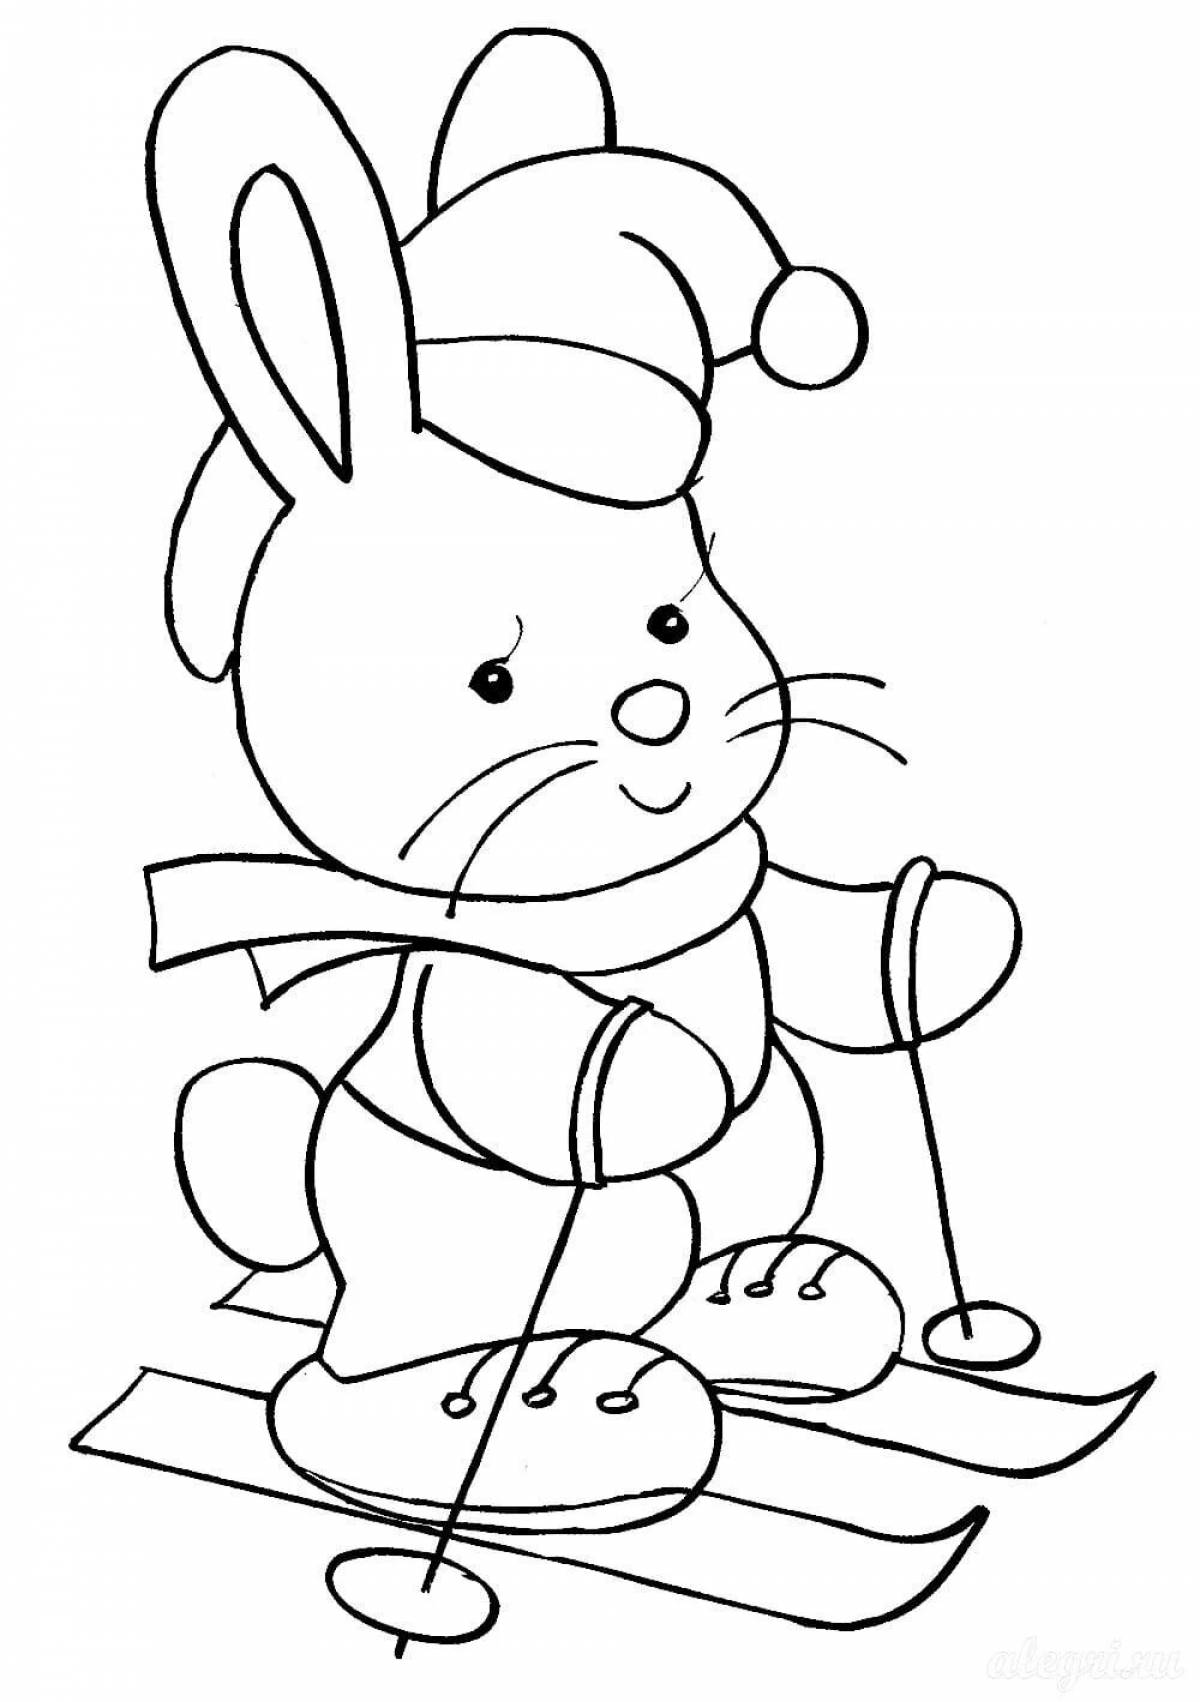 Adorable Christmas Bunny coloring book